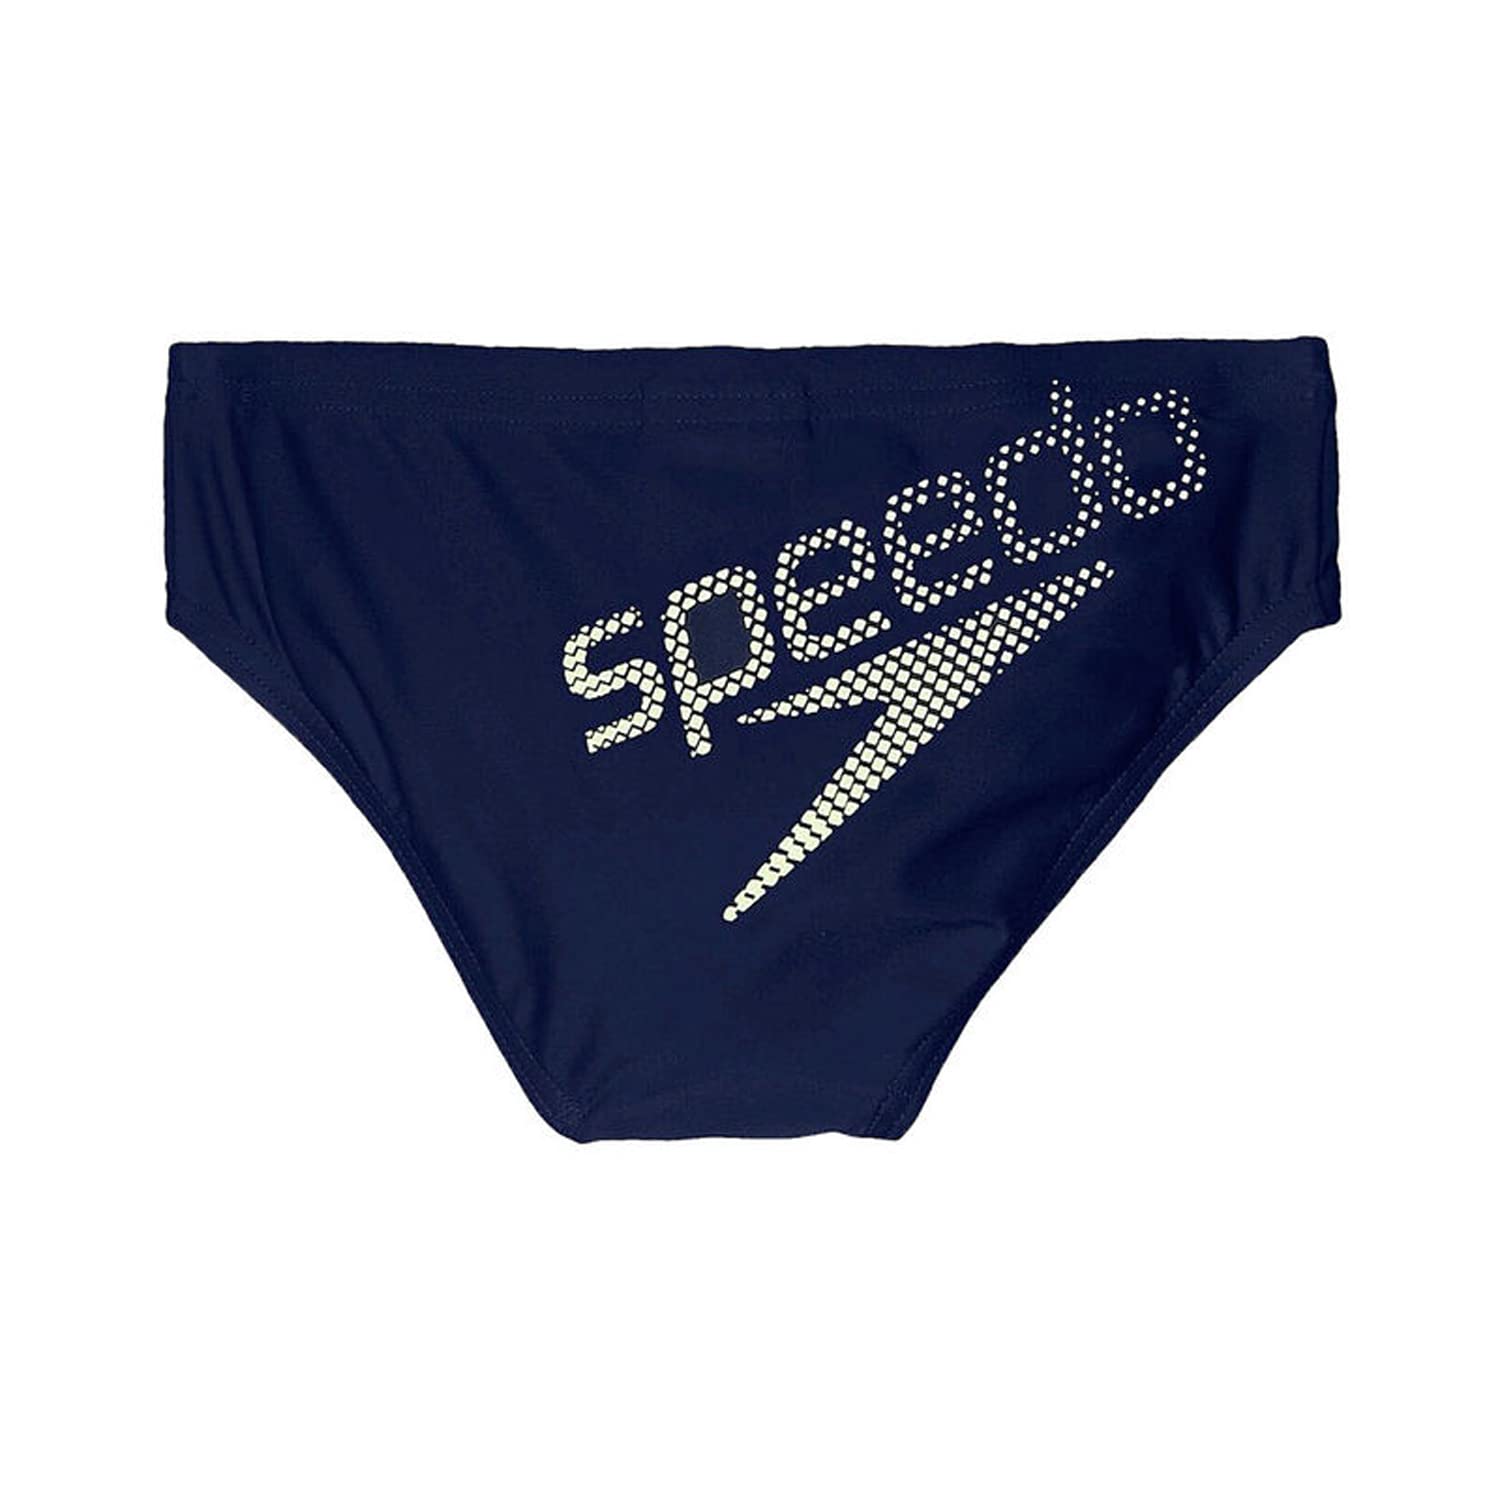 Speedo Boy's Essential Logo Brief, Navy/Bright Zest - Best Price online Prokicksports.com